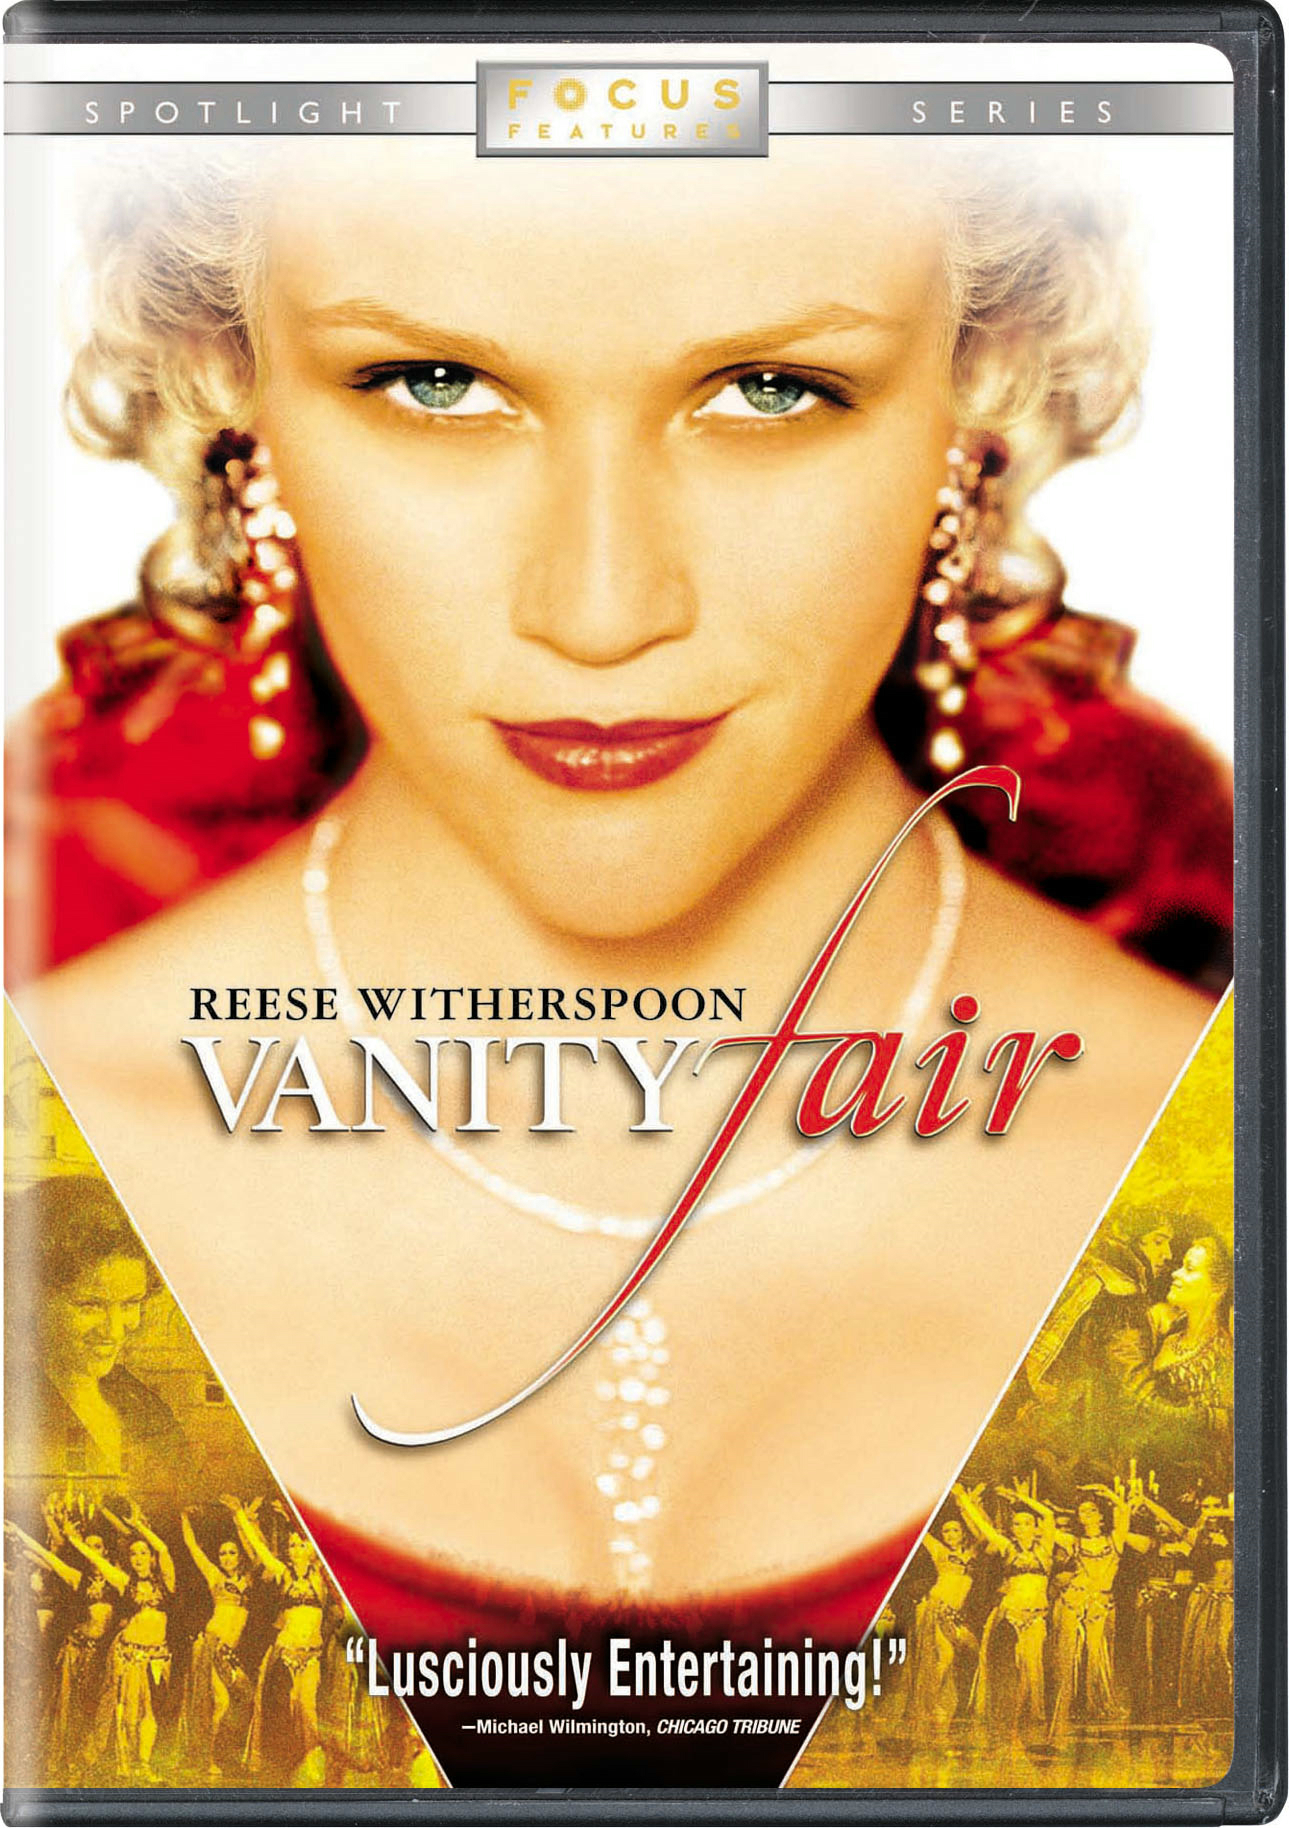 Vanity Fair (DVD Widescreen Spotlight Series) - DVD [ 2004 ]  - Drama Movies On DVD - Movies On GRUV